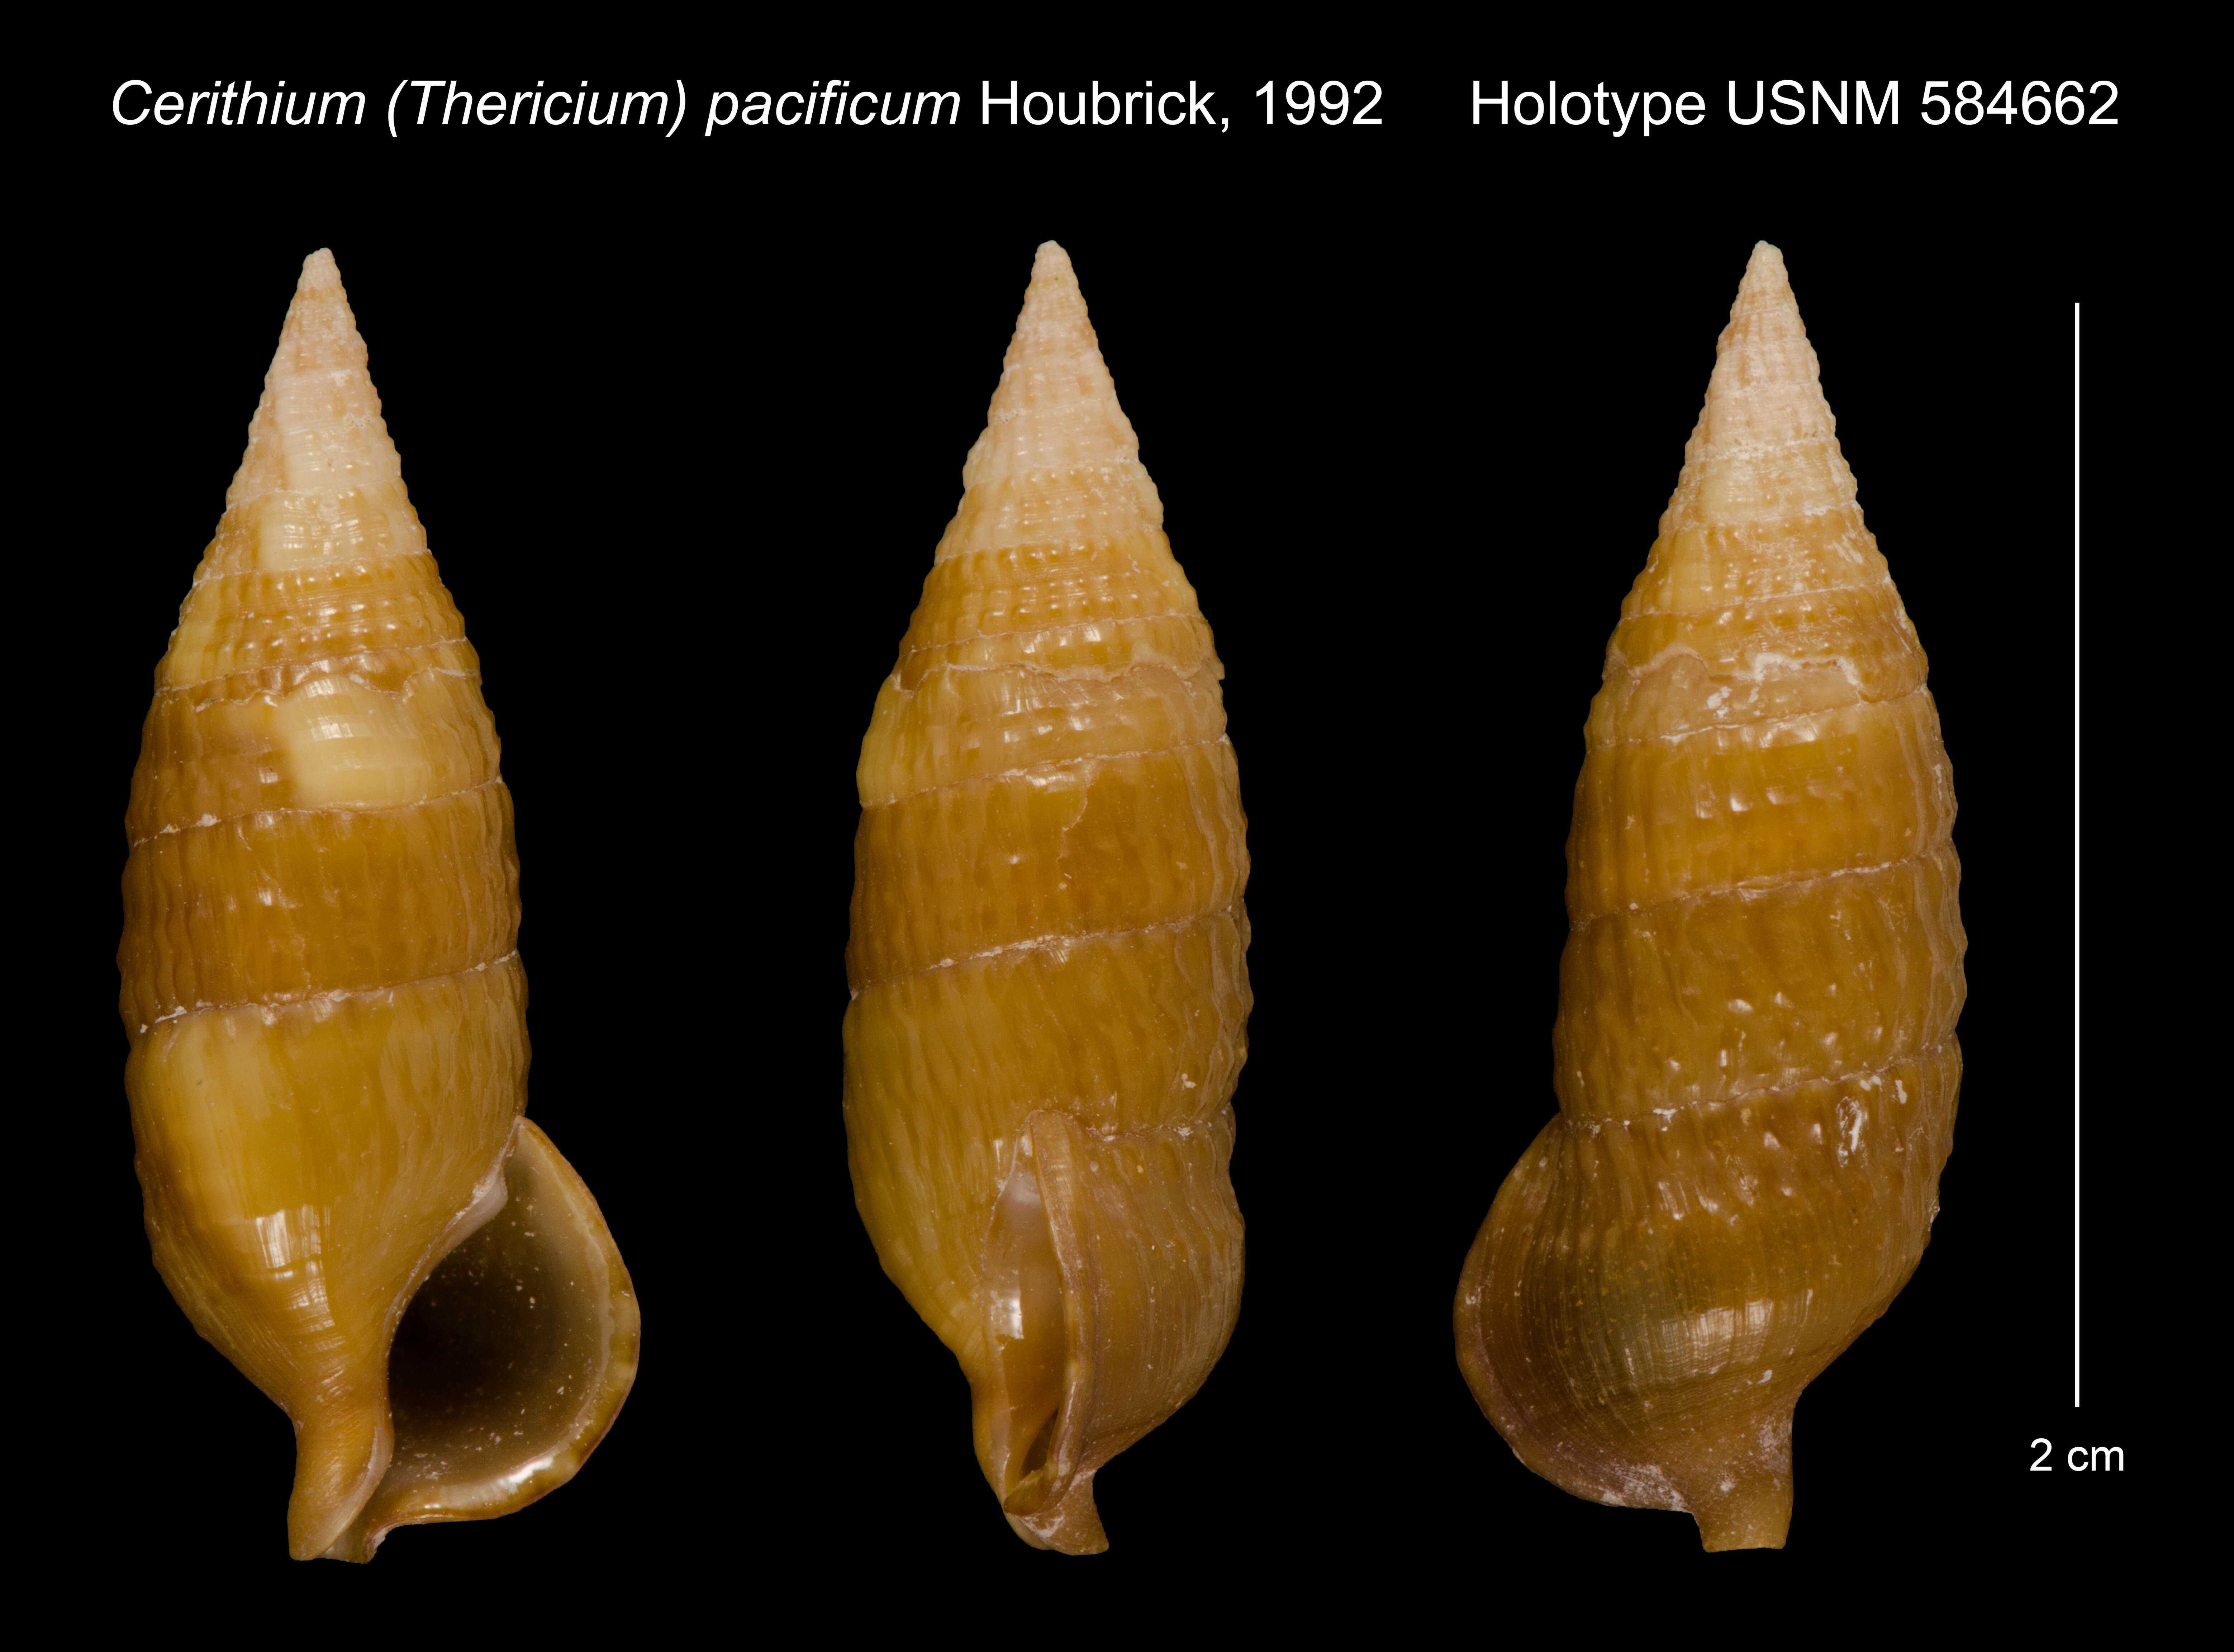 Image of Cerithium pacificum Houbrick 1992